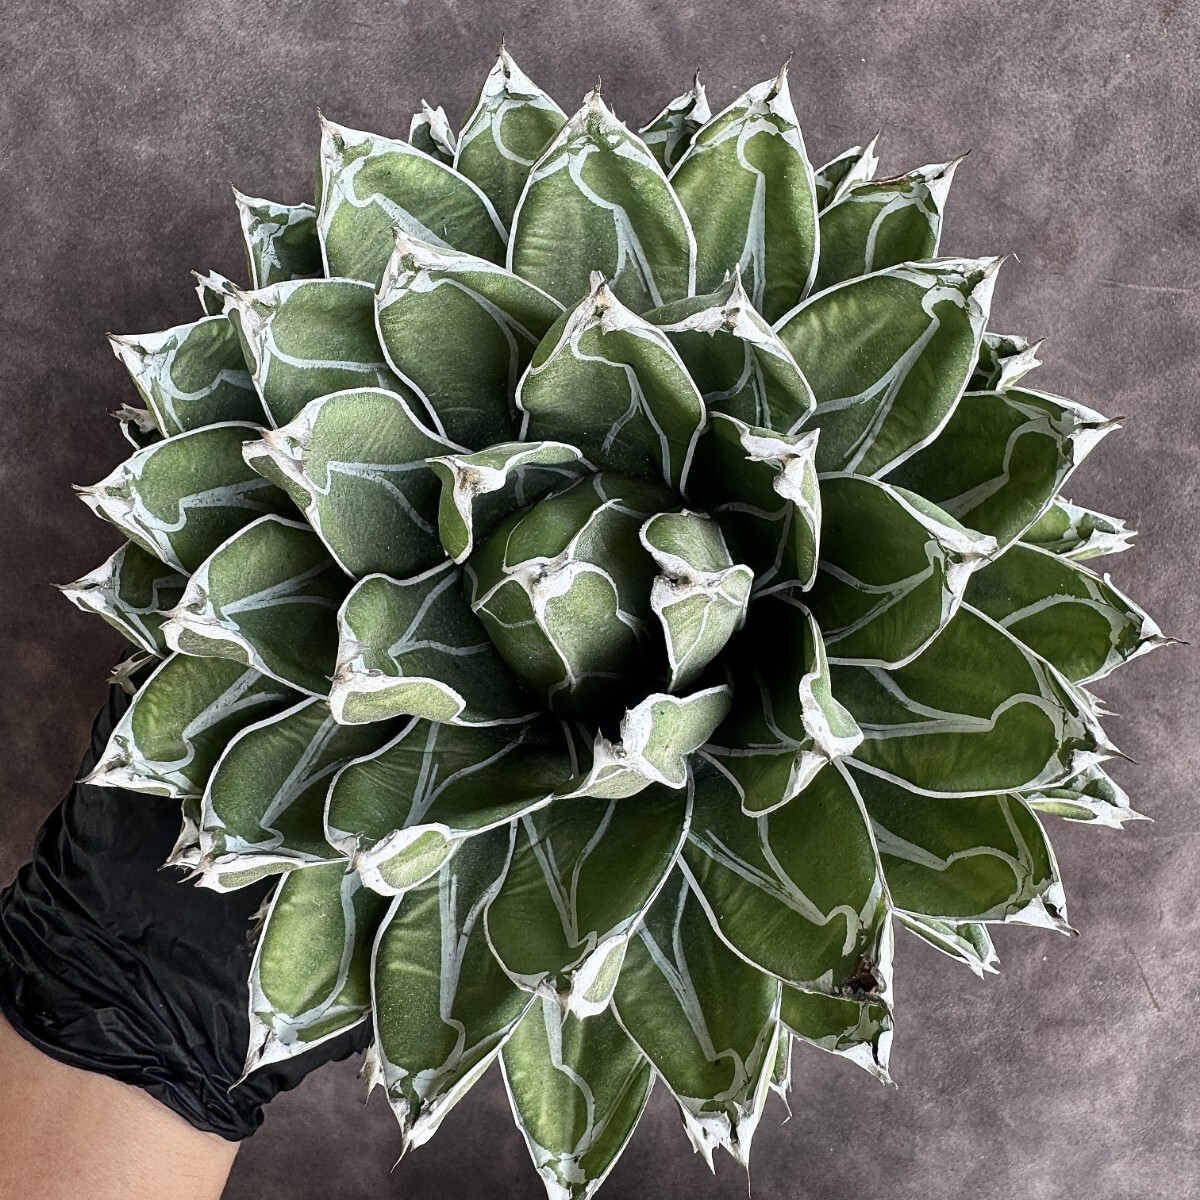 【Lj_plants】H06 多肉植物 アガベ 笹の雪 包葉 球形 超大株 美株の画像8